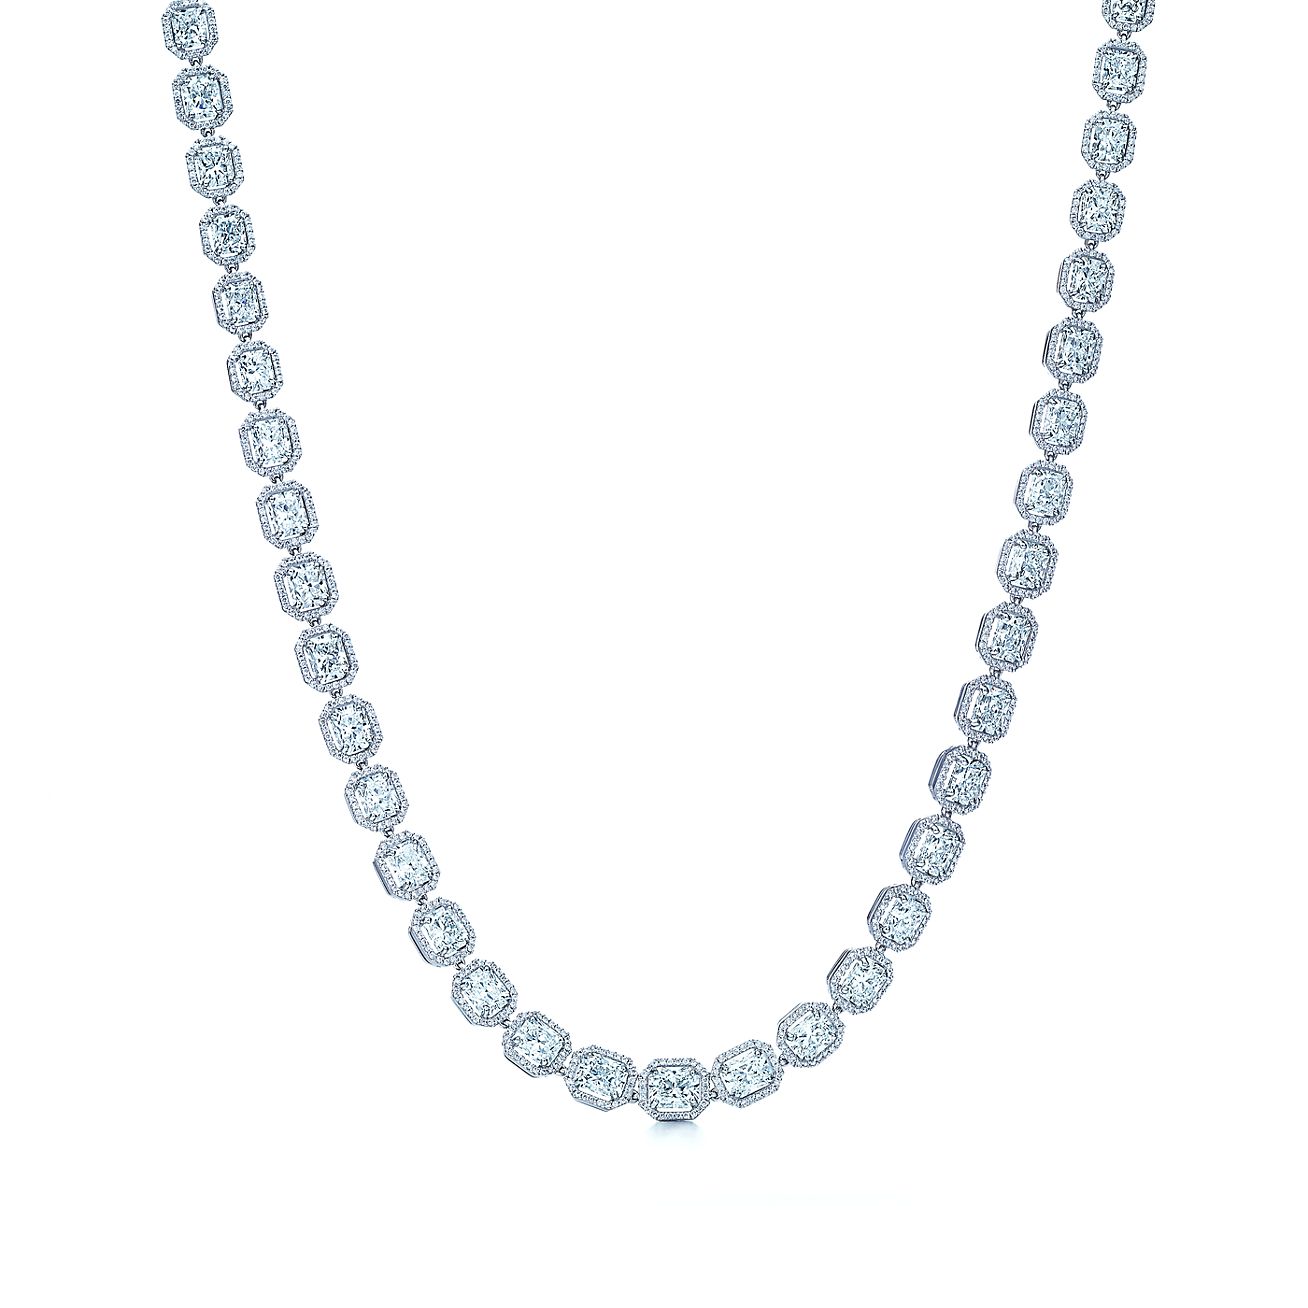 ルシダ ダイヤモンド ネックレス プラチナ | Tiffany u0026 Co.